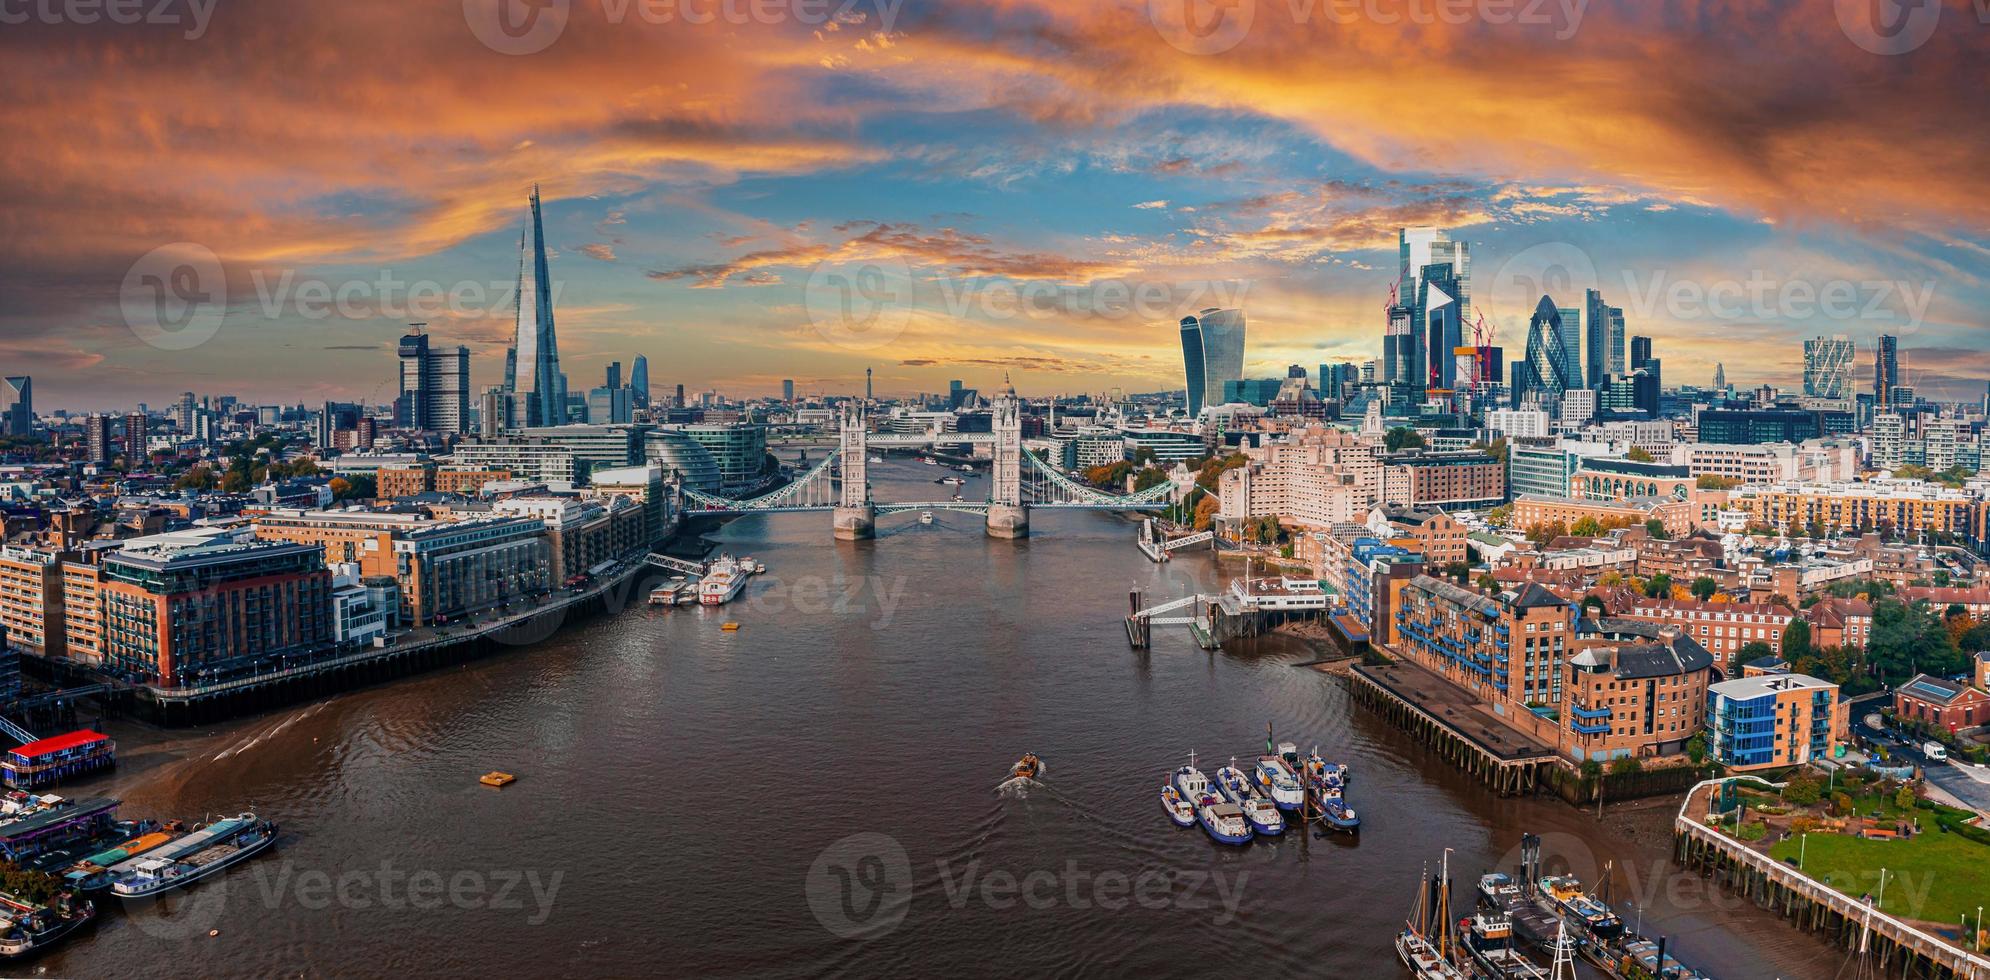 panorama aereo del london tower bridge e del fiume tamigi, inghilterra, regno unito. foto